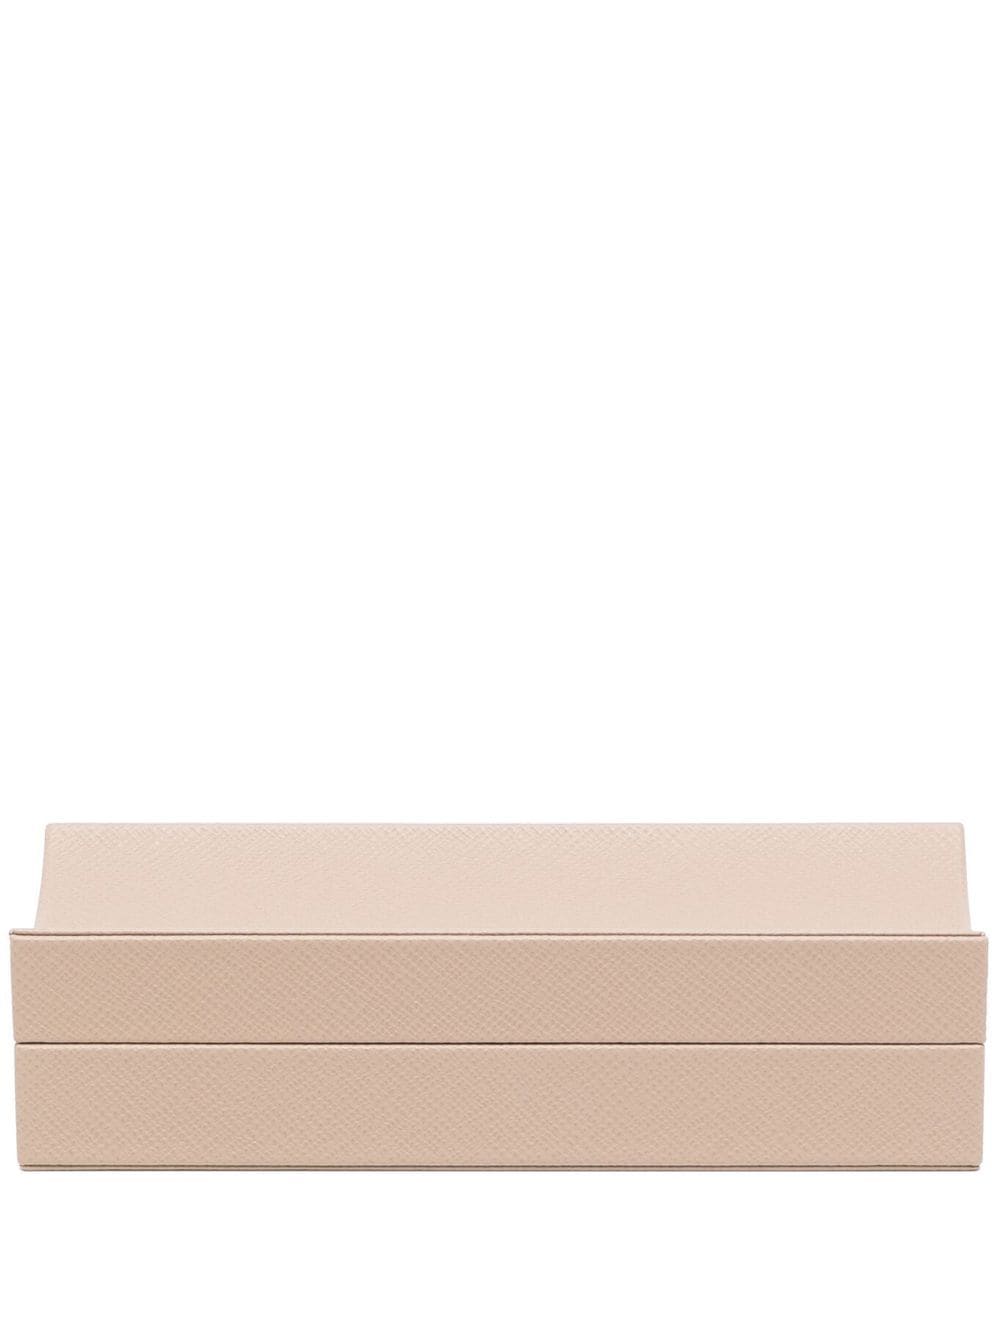 Smythson rectangular leather box - Neutrals von Smythson